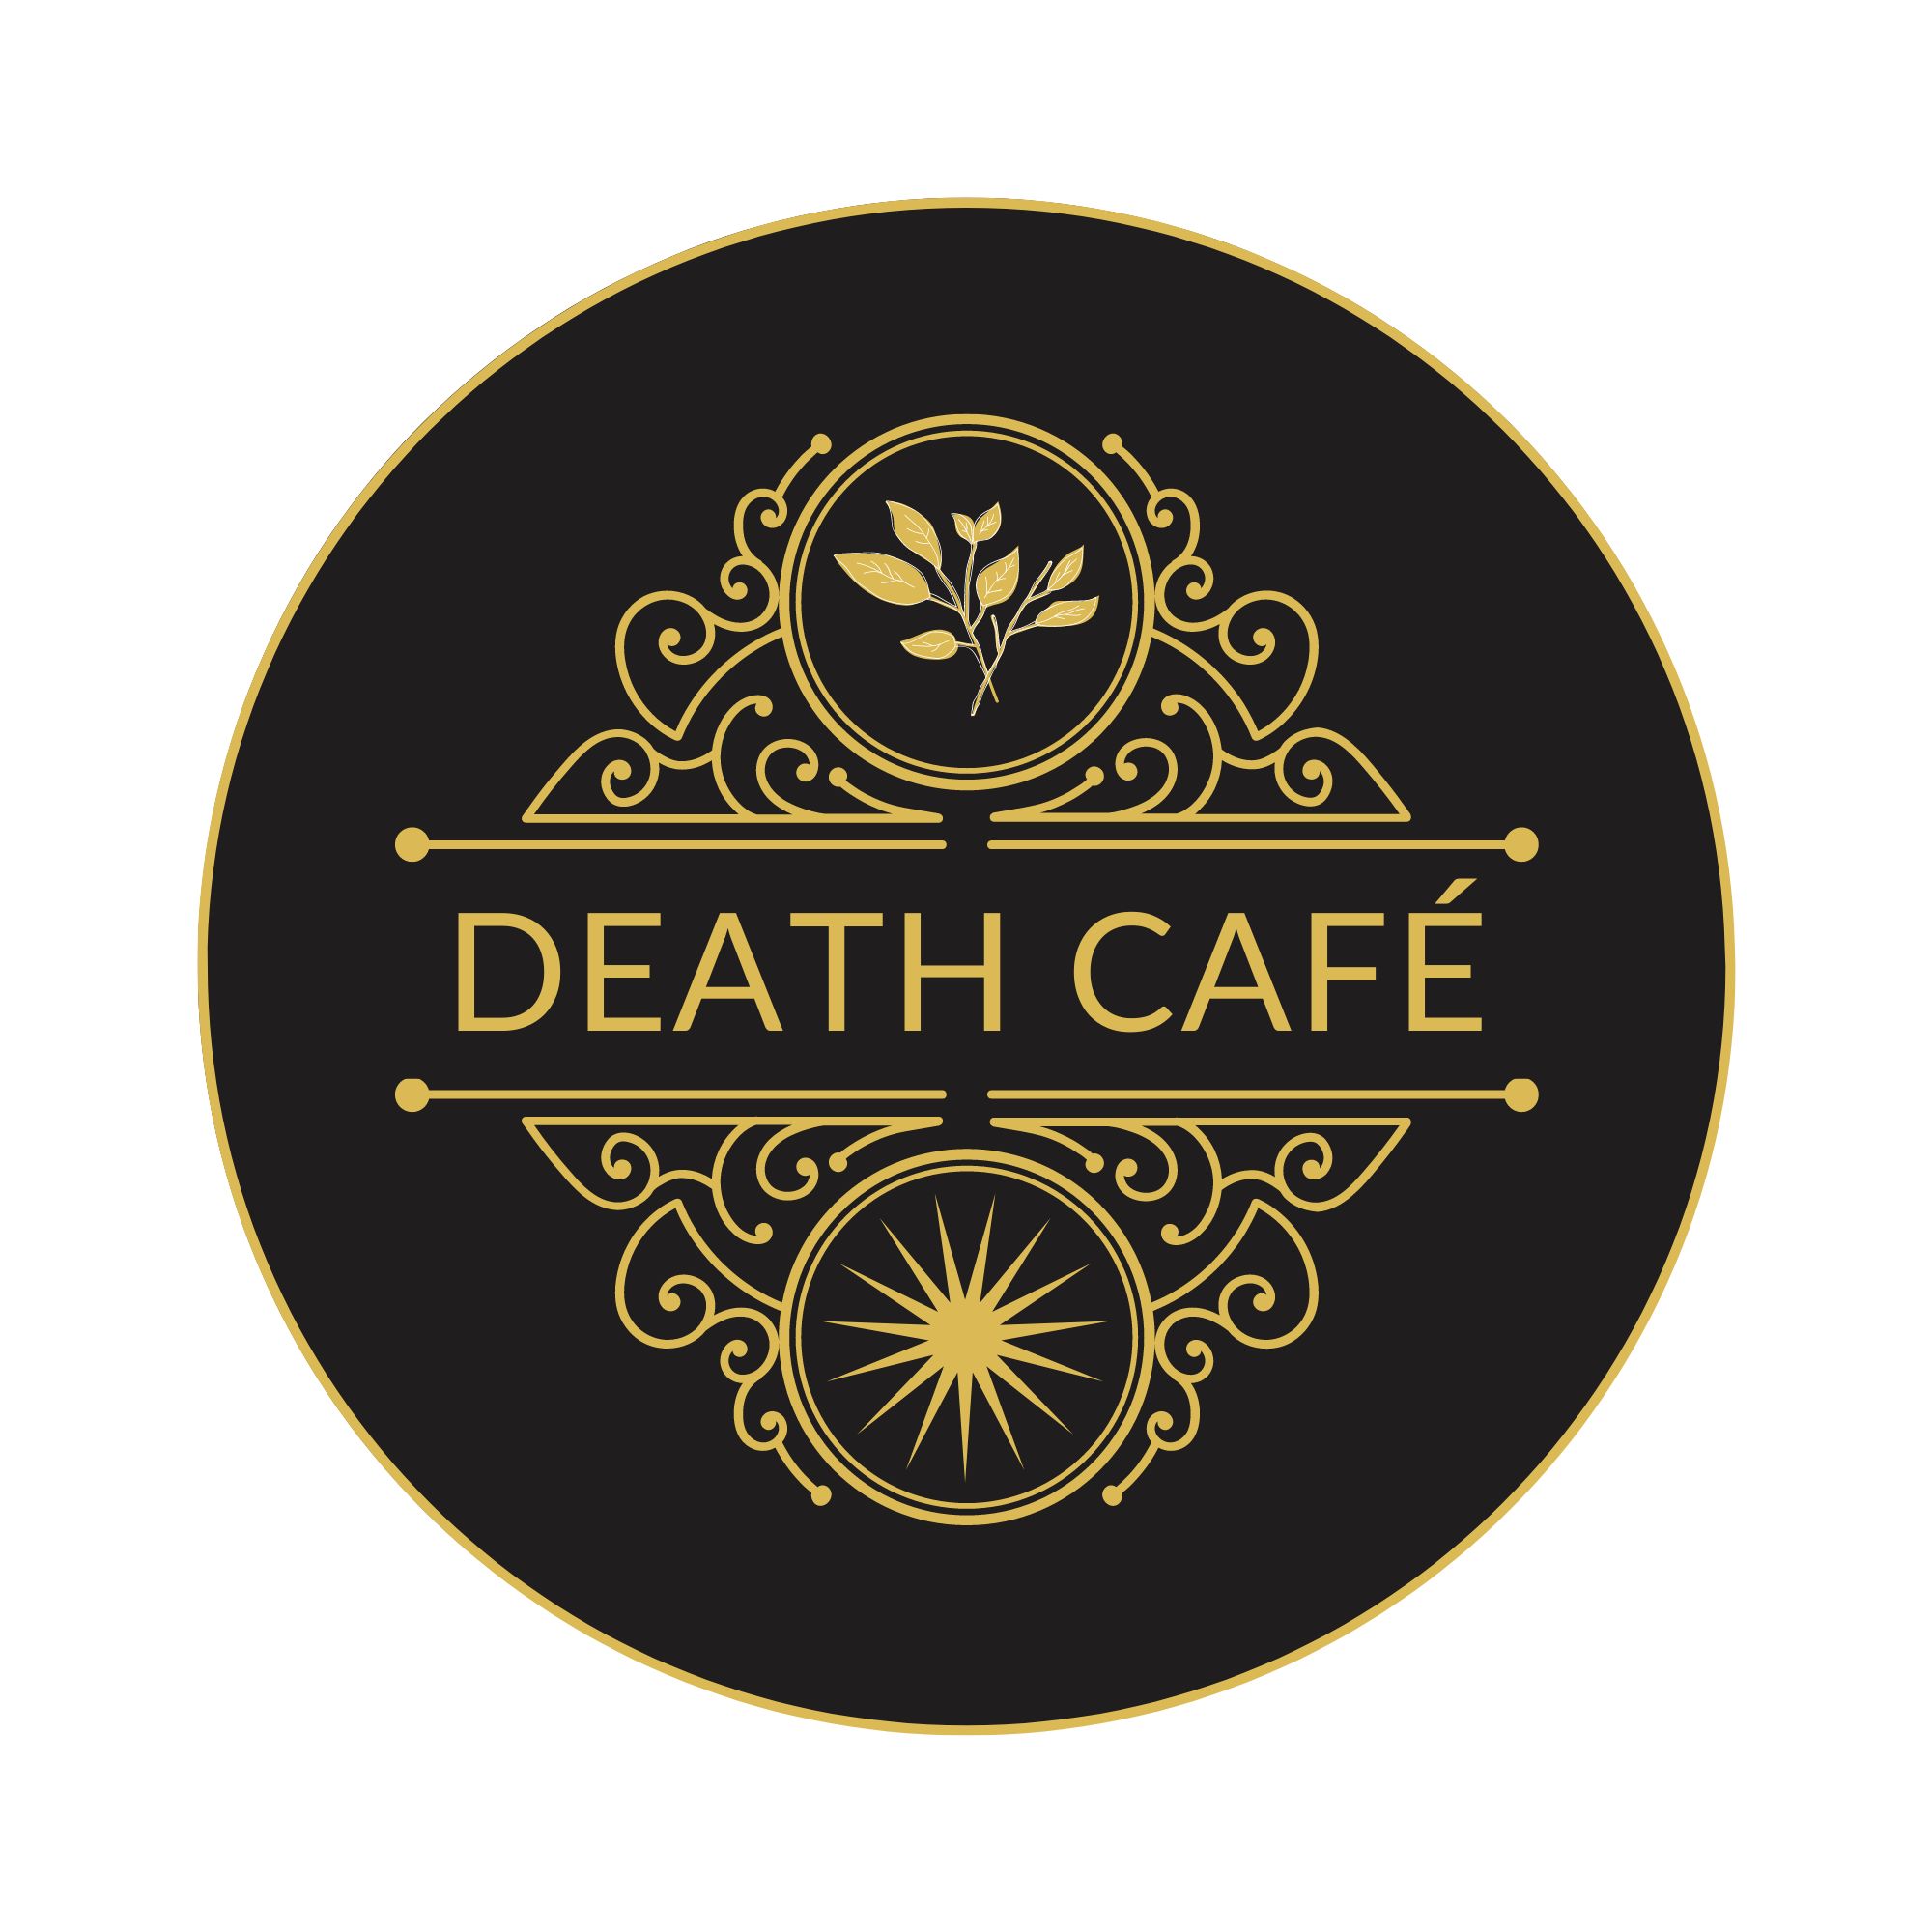 Der Text "Death Cafe" verziert mit goldenen Ornamenten auf schwarzem Hintergrund.